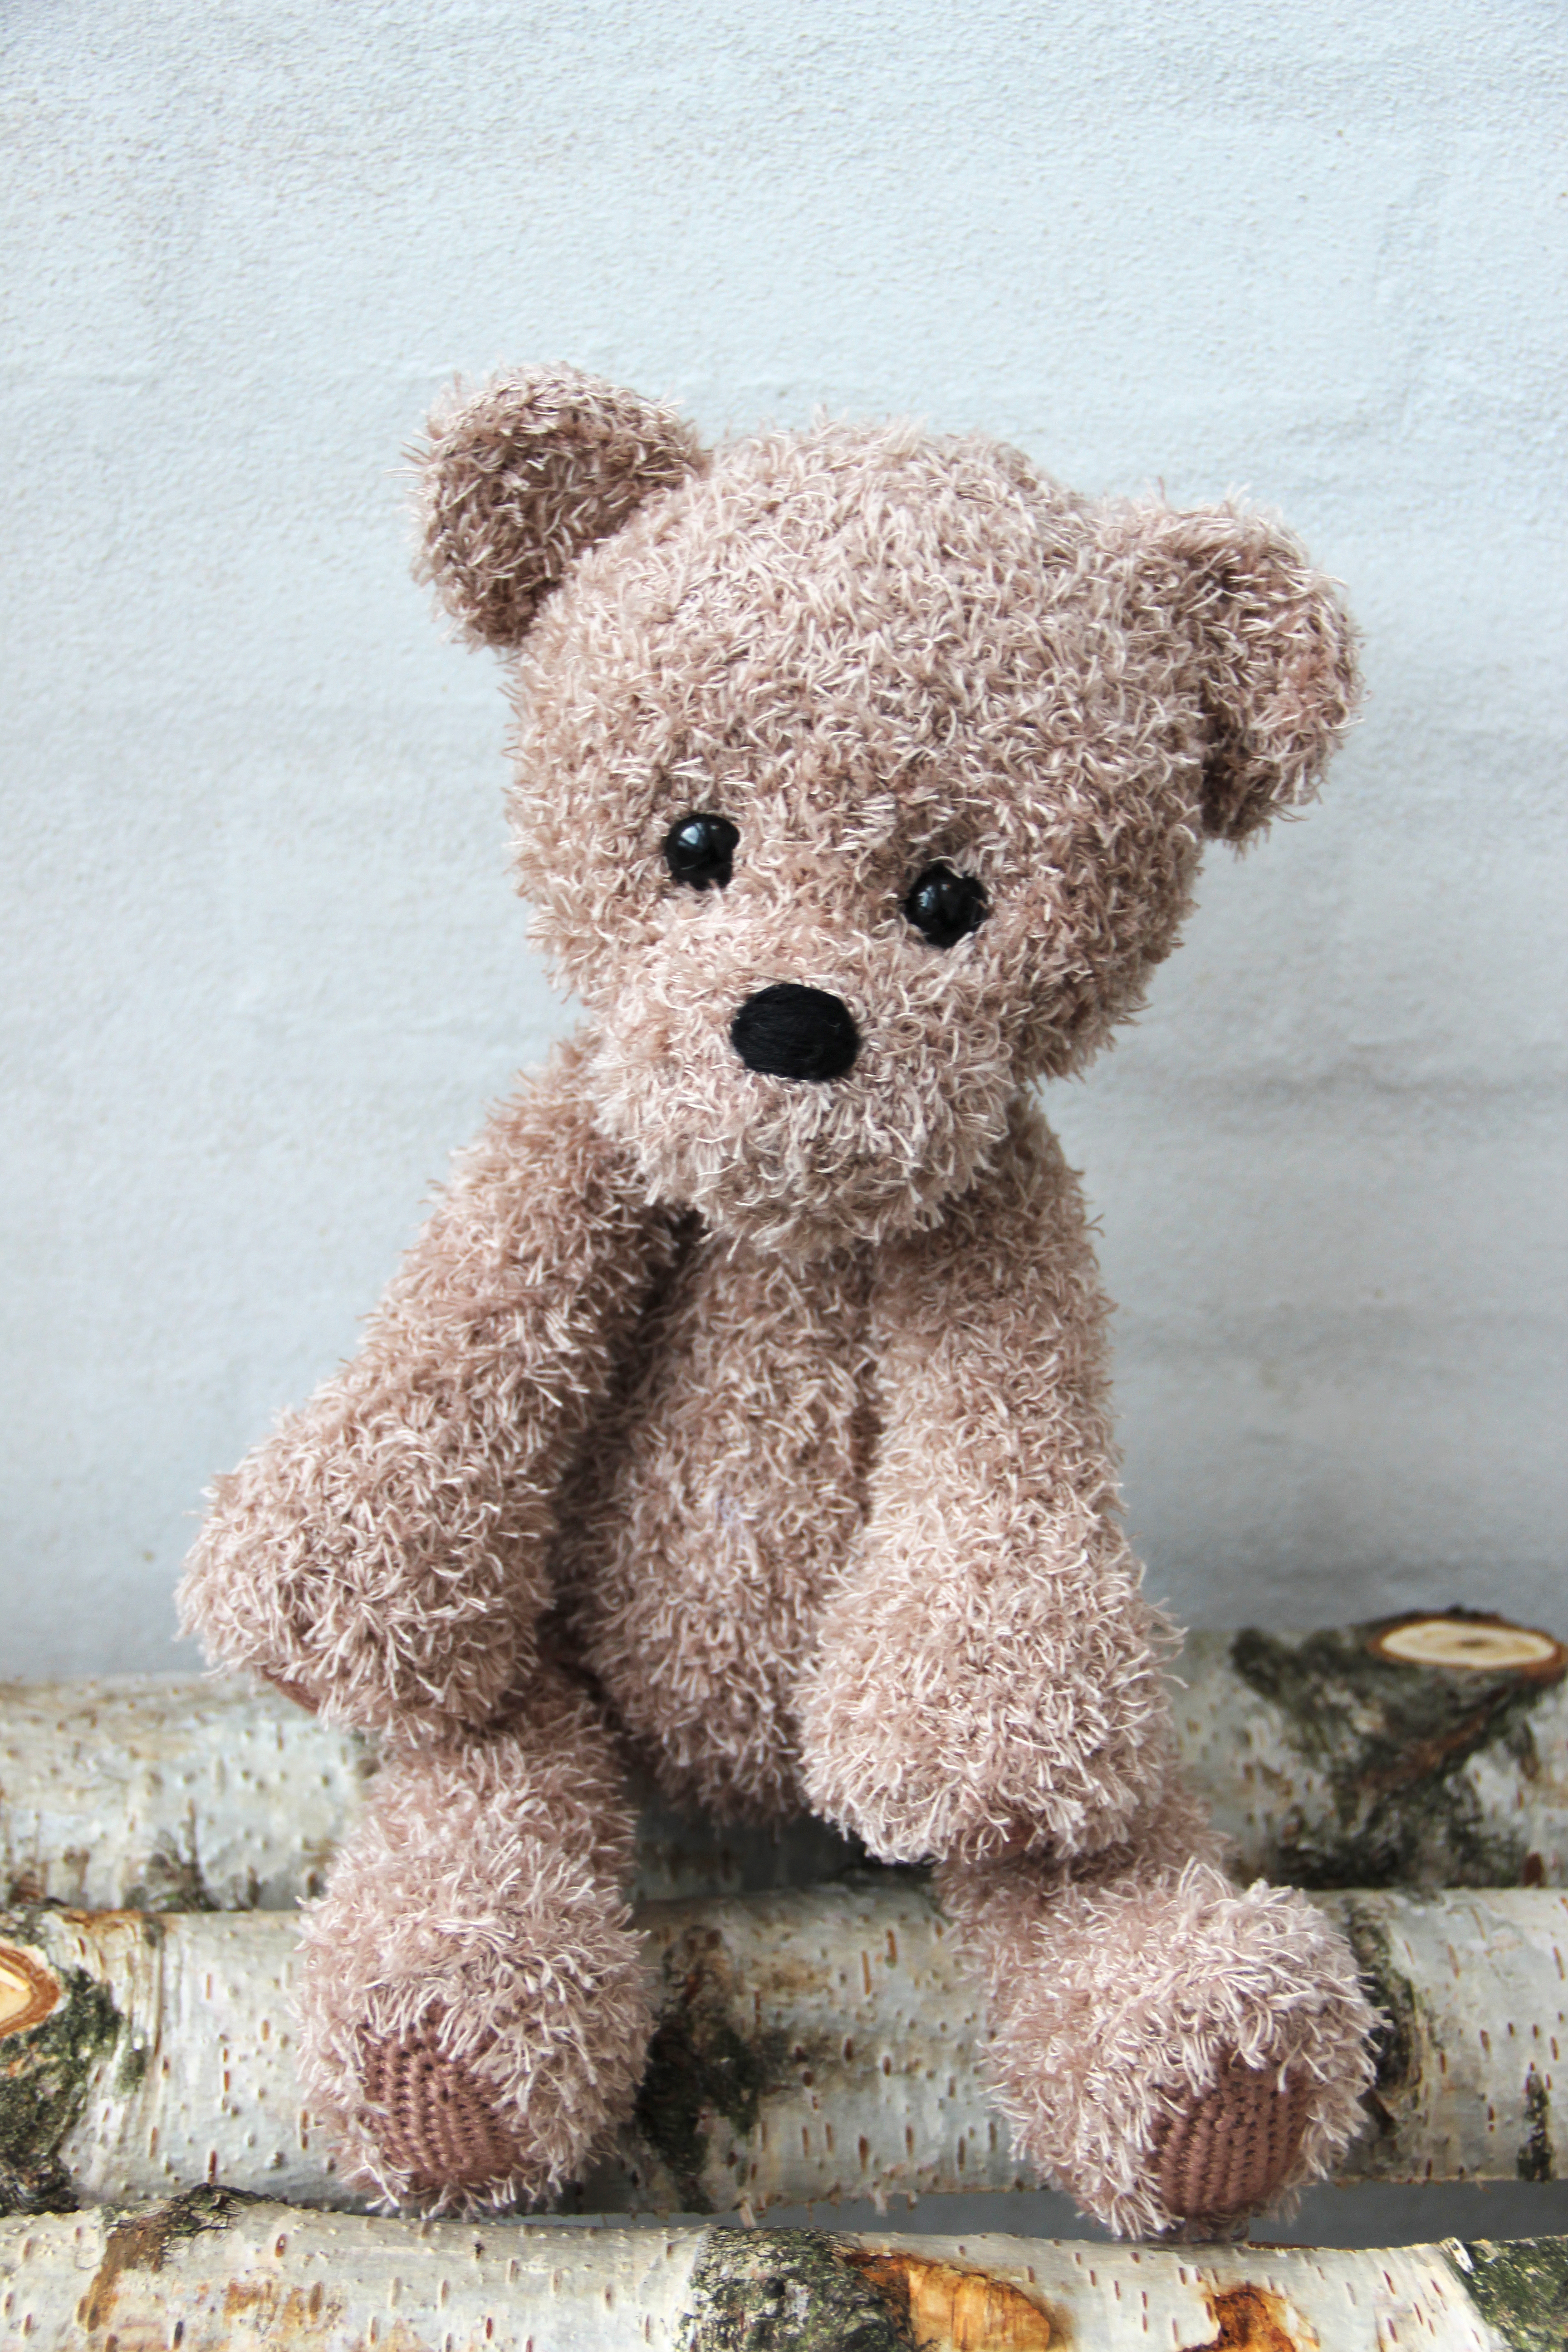 go handmade teddy